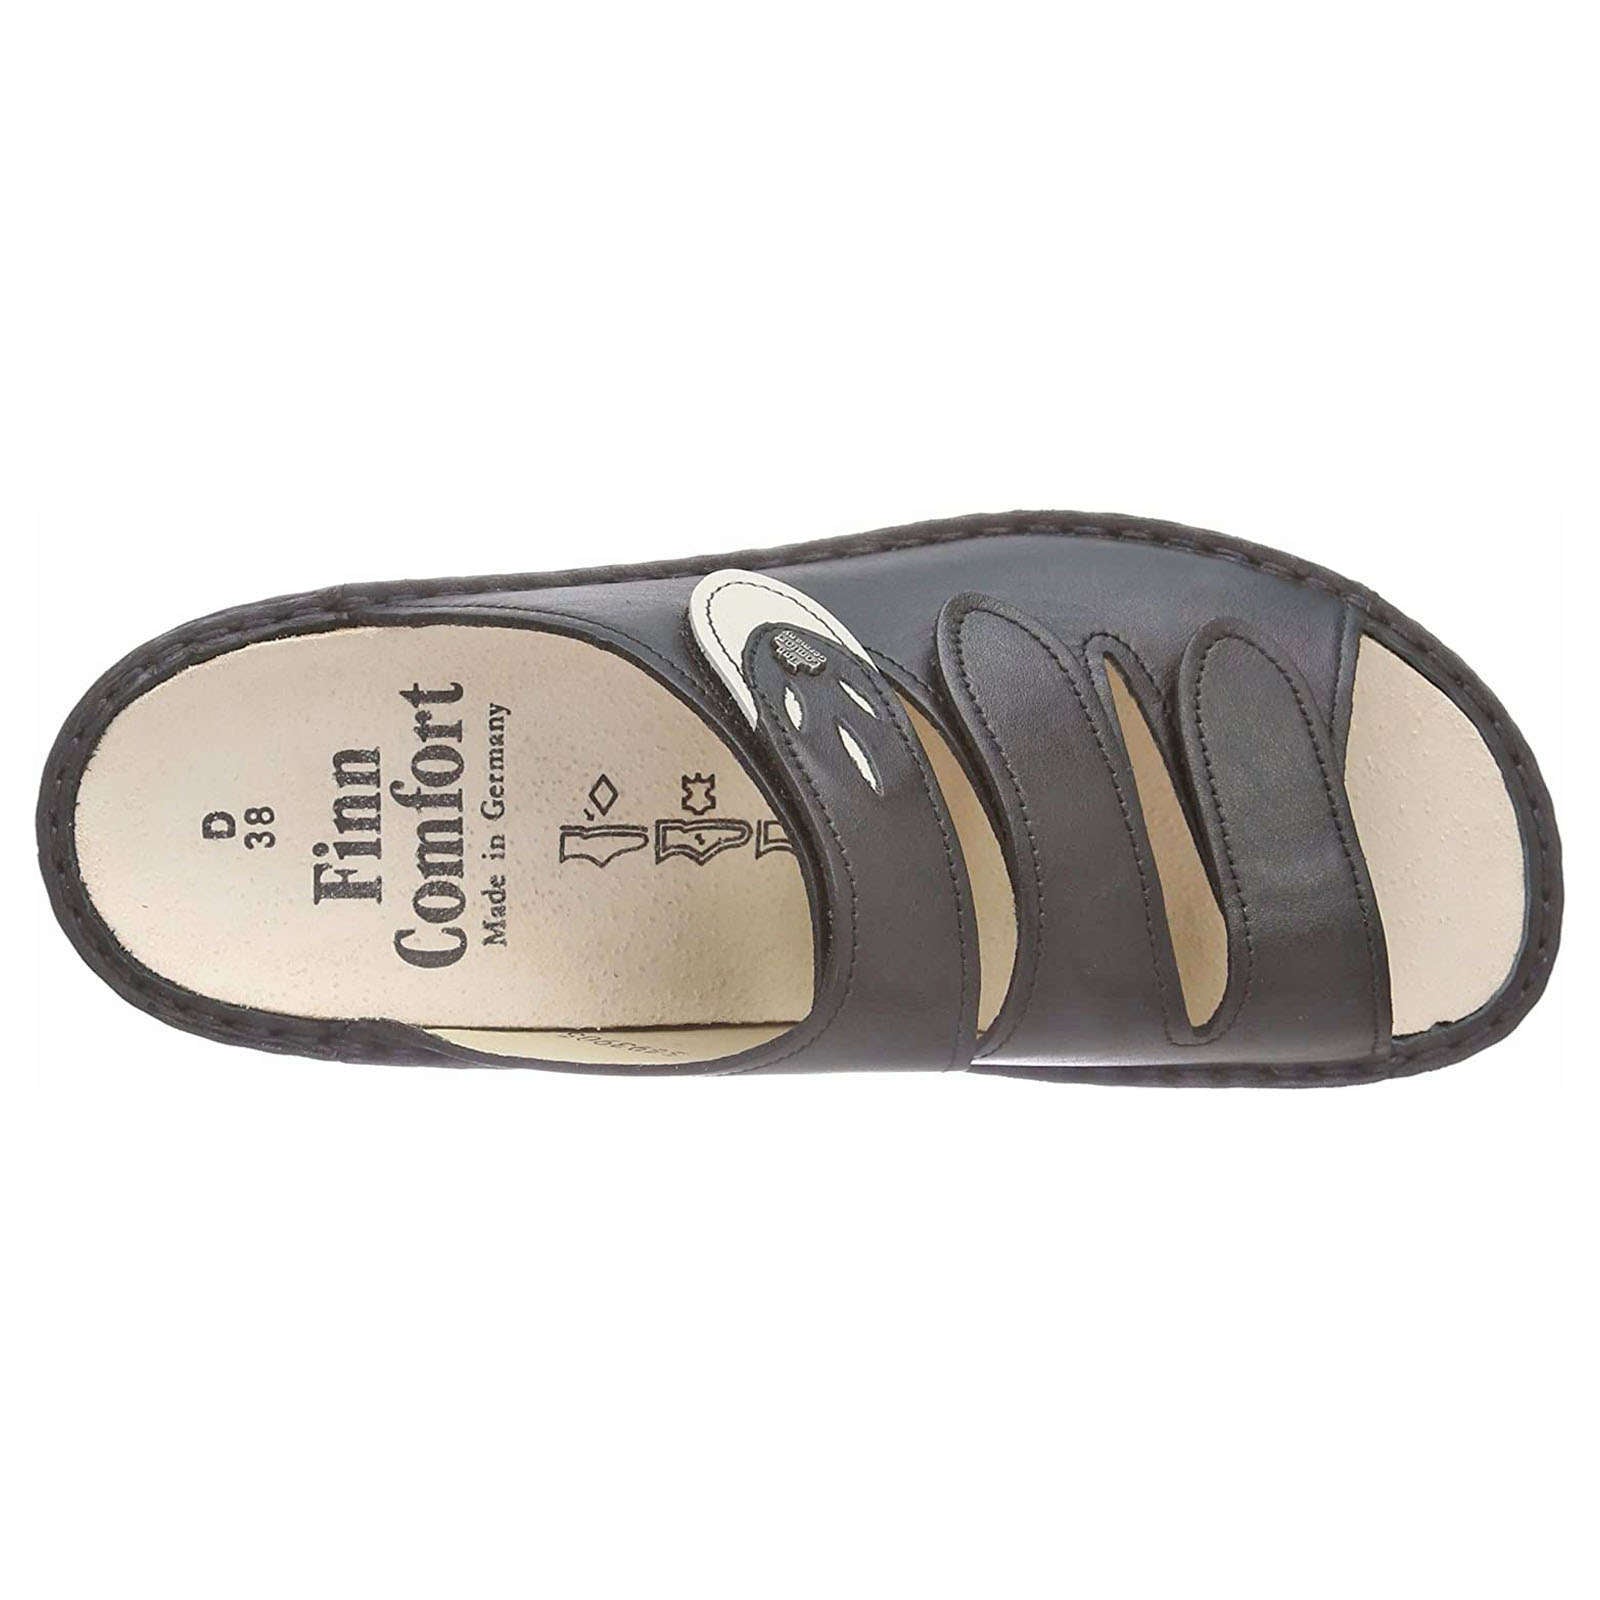 Finn Comfort Kos Leather Women's Slip-On Sandals#color_black jasmin